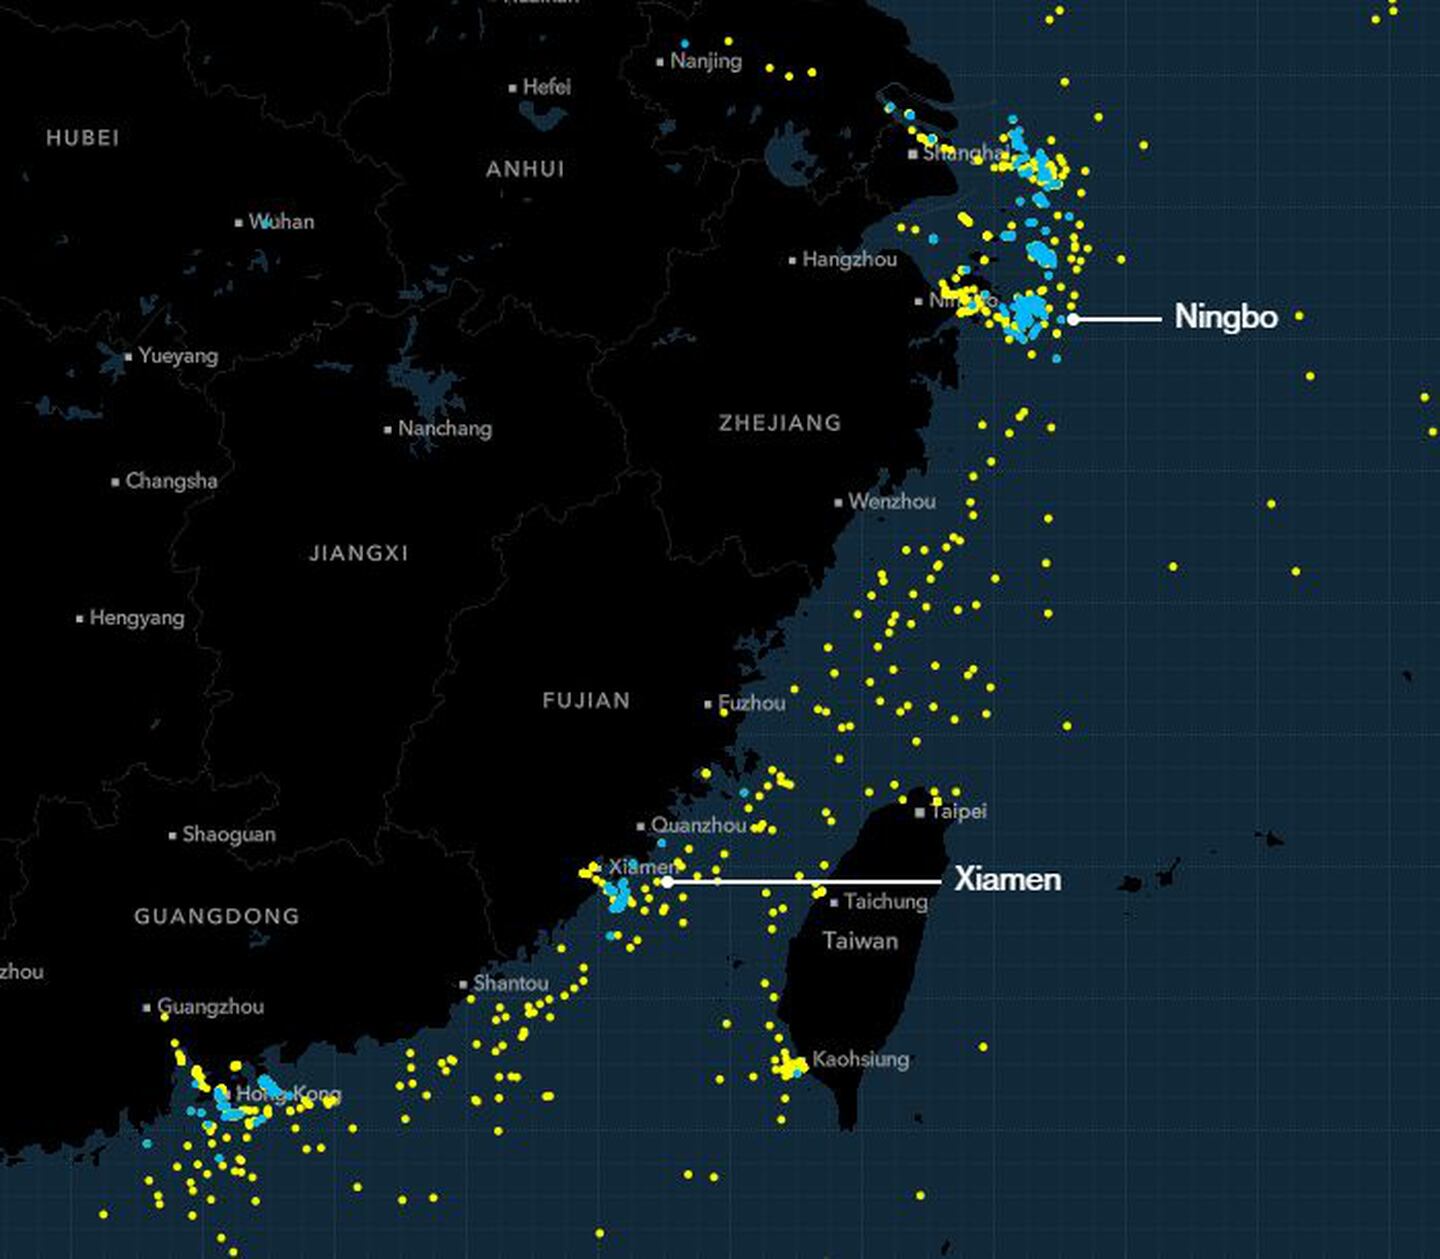 Posiciones de los buques portacontenedores, a partir del 17 de agosto, mapeadas en amarillo, con los buques anclados en azul.
dfd